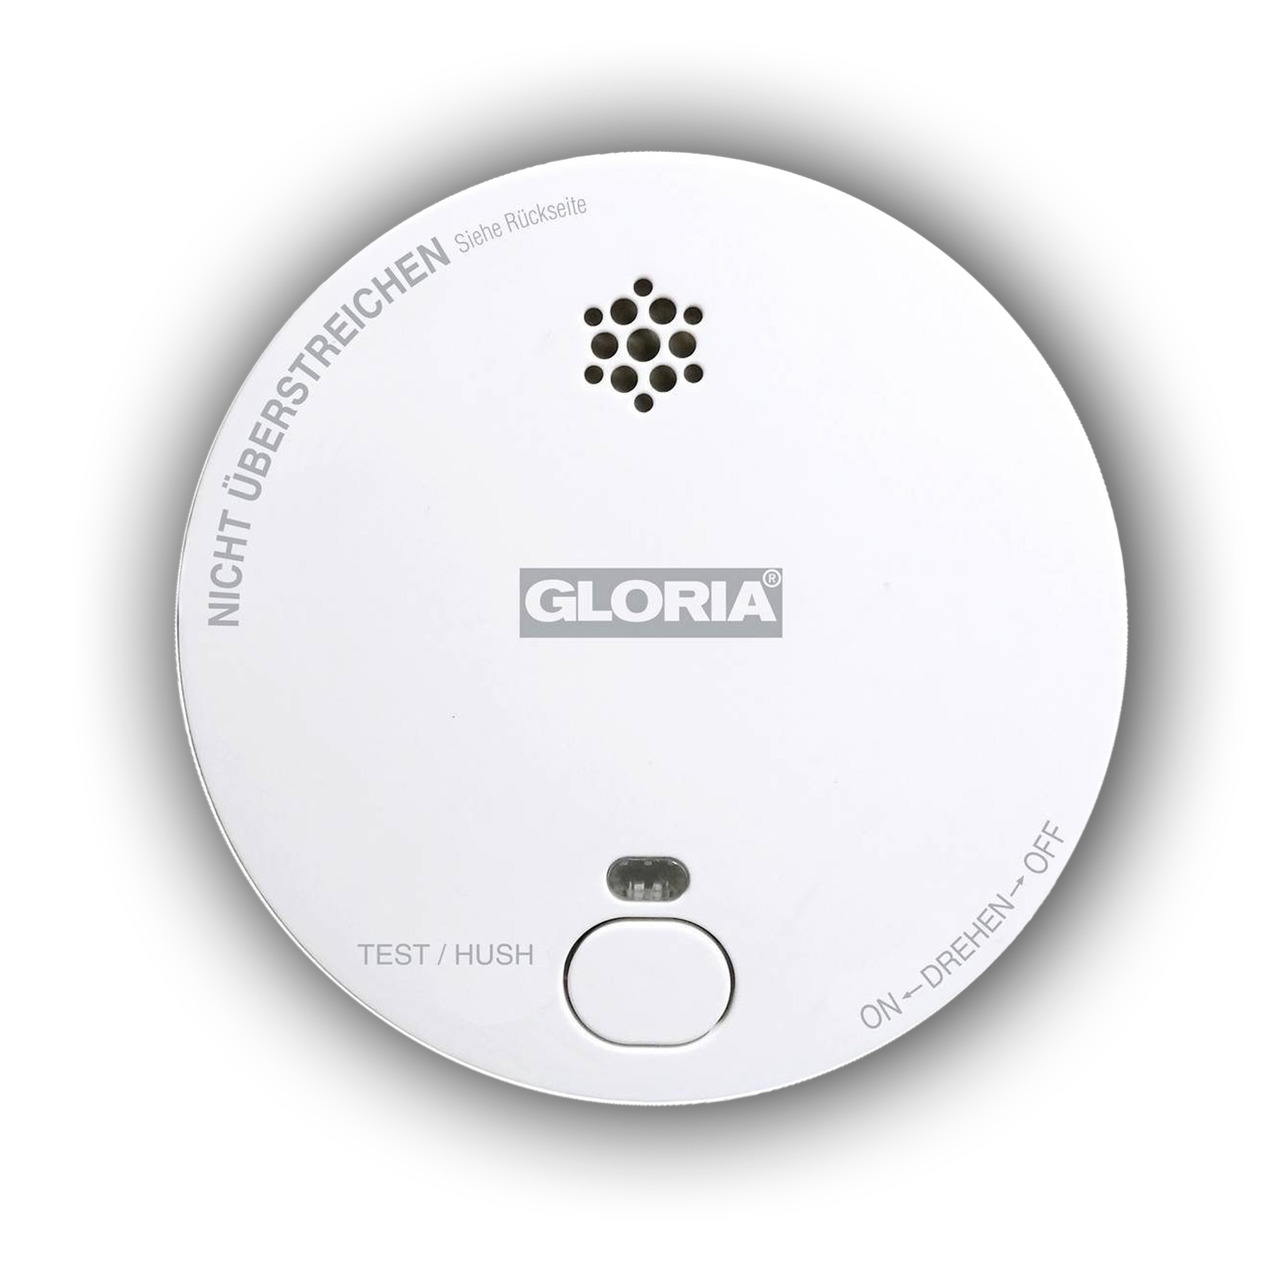 GLORIA Stand-alone Rauchwarnmelder R-1- inkl- 9-V-Blockbatterie- 3 Jahre Herstellergarantie unter Sicherheitstechnik